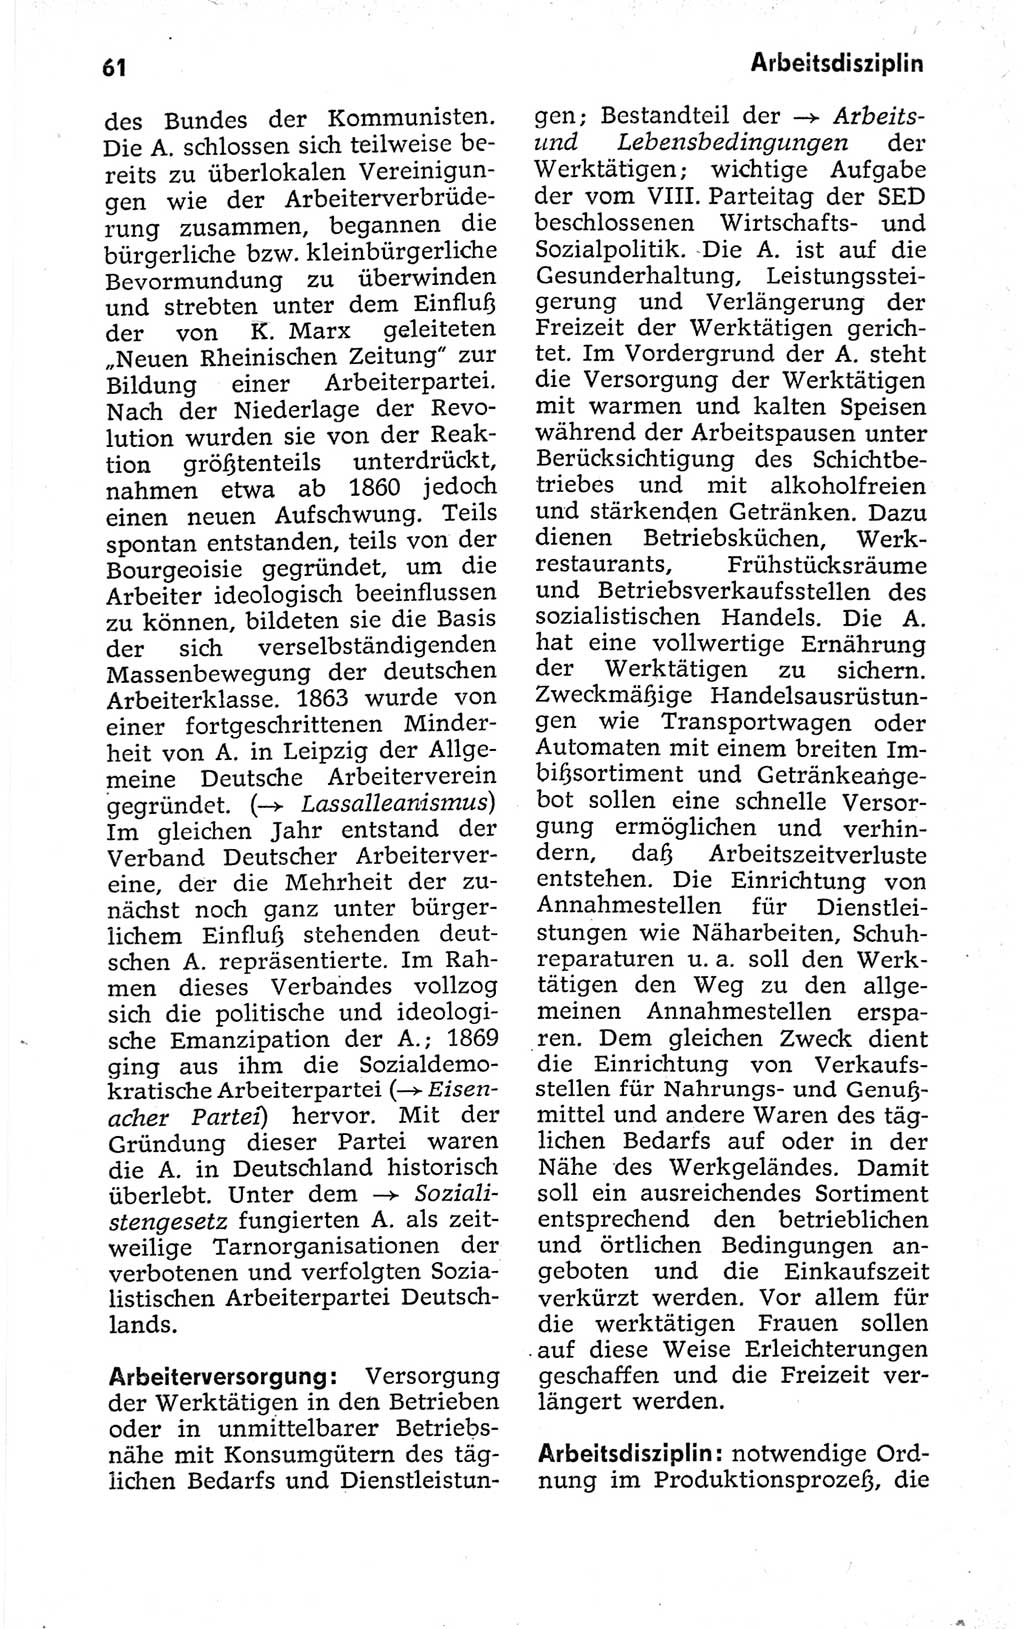 Kleines politisches Wörterbuch [Deutsche Demokratische Republik (DDR)] 1973, Seite 61 (Kl. pol. Wb. DDR 1973, S. 61)